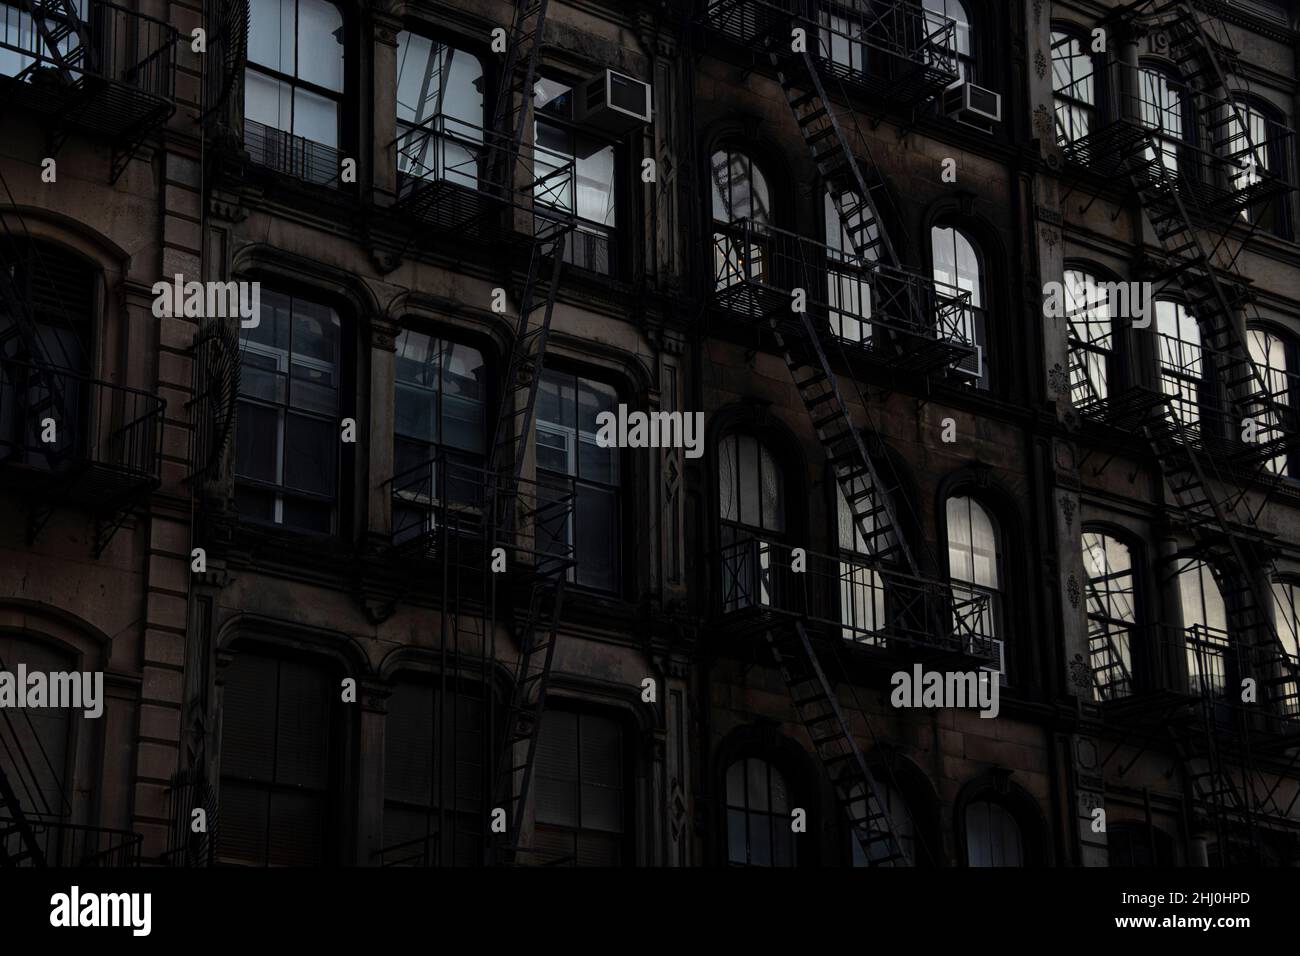 Fluchtleitern an alten Gebäuden in New York Stock Photo